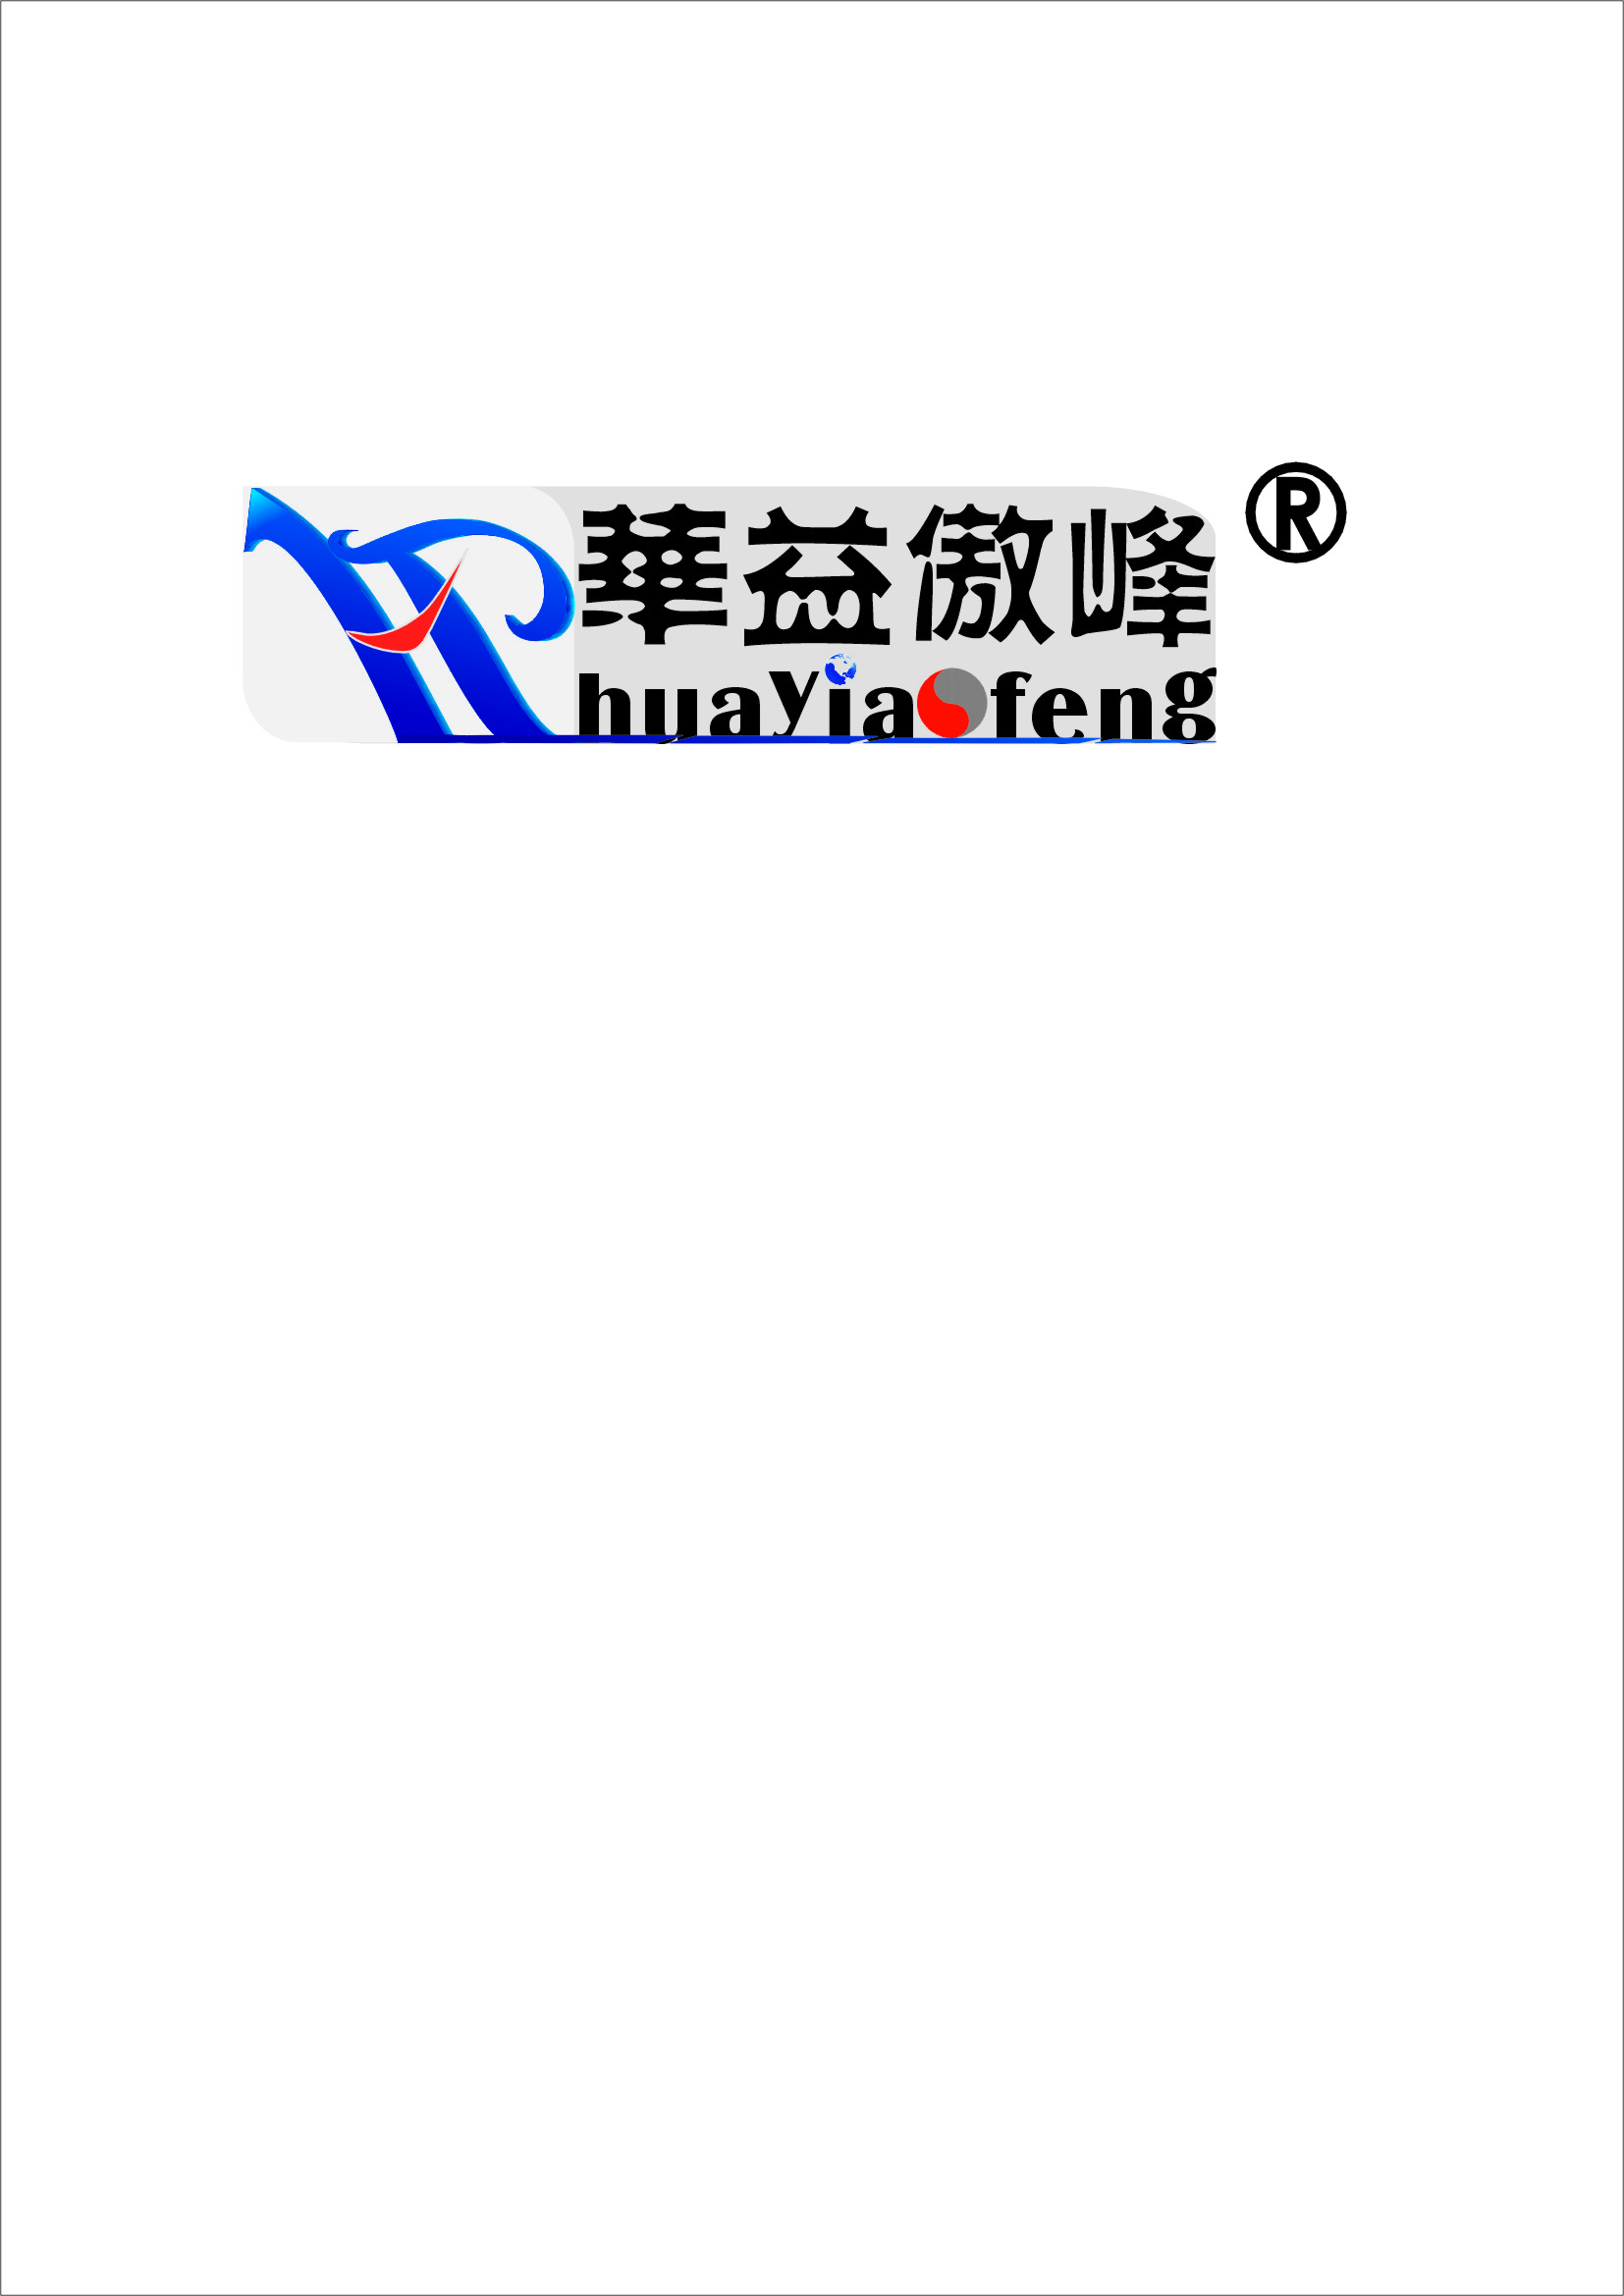 傲峰企业管理咨询有限公司logo